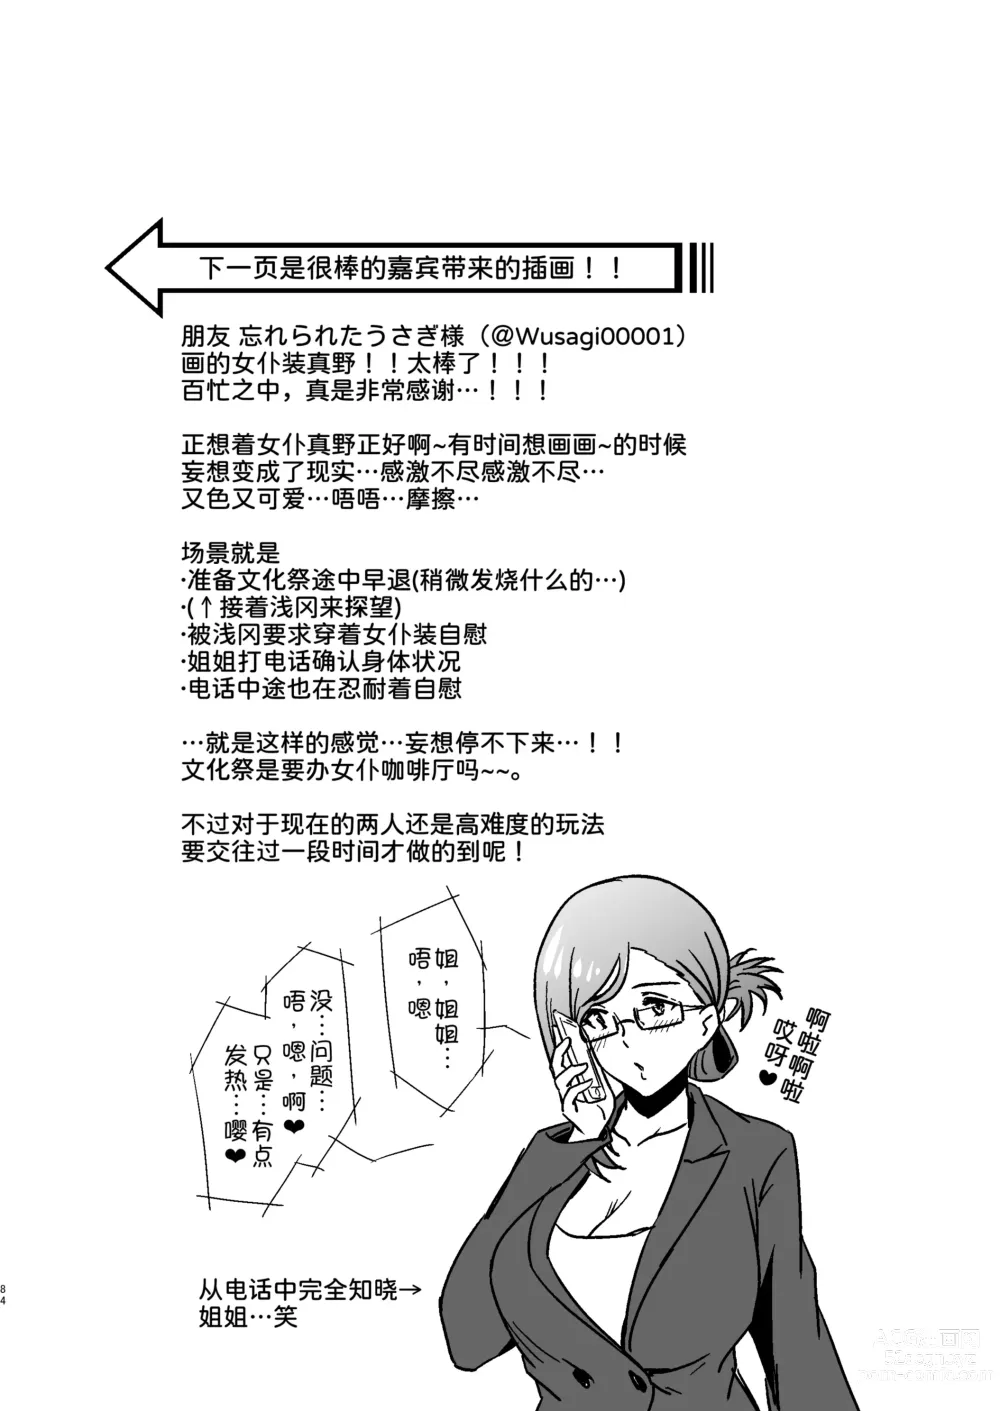 Page 92 of doujinshi Pure Jimiko #1 Kono Kimochi no Namae o Oshiete